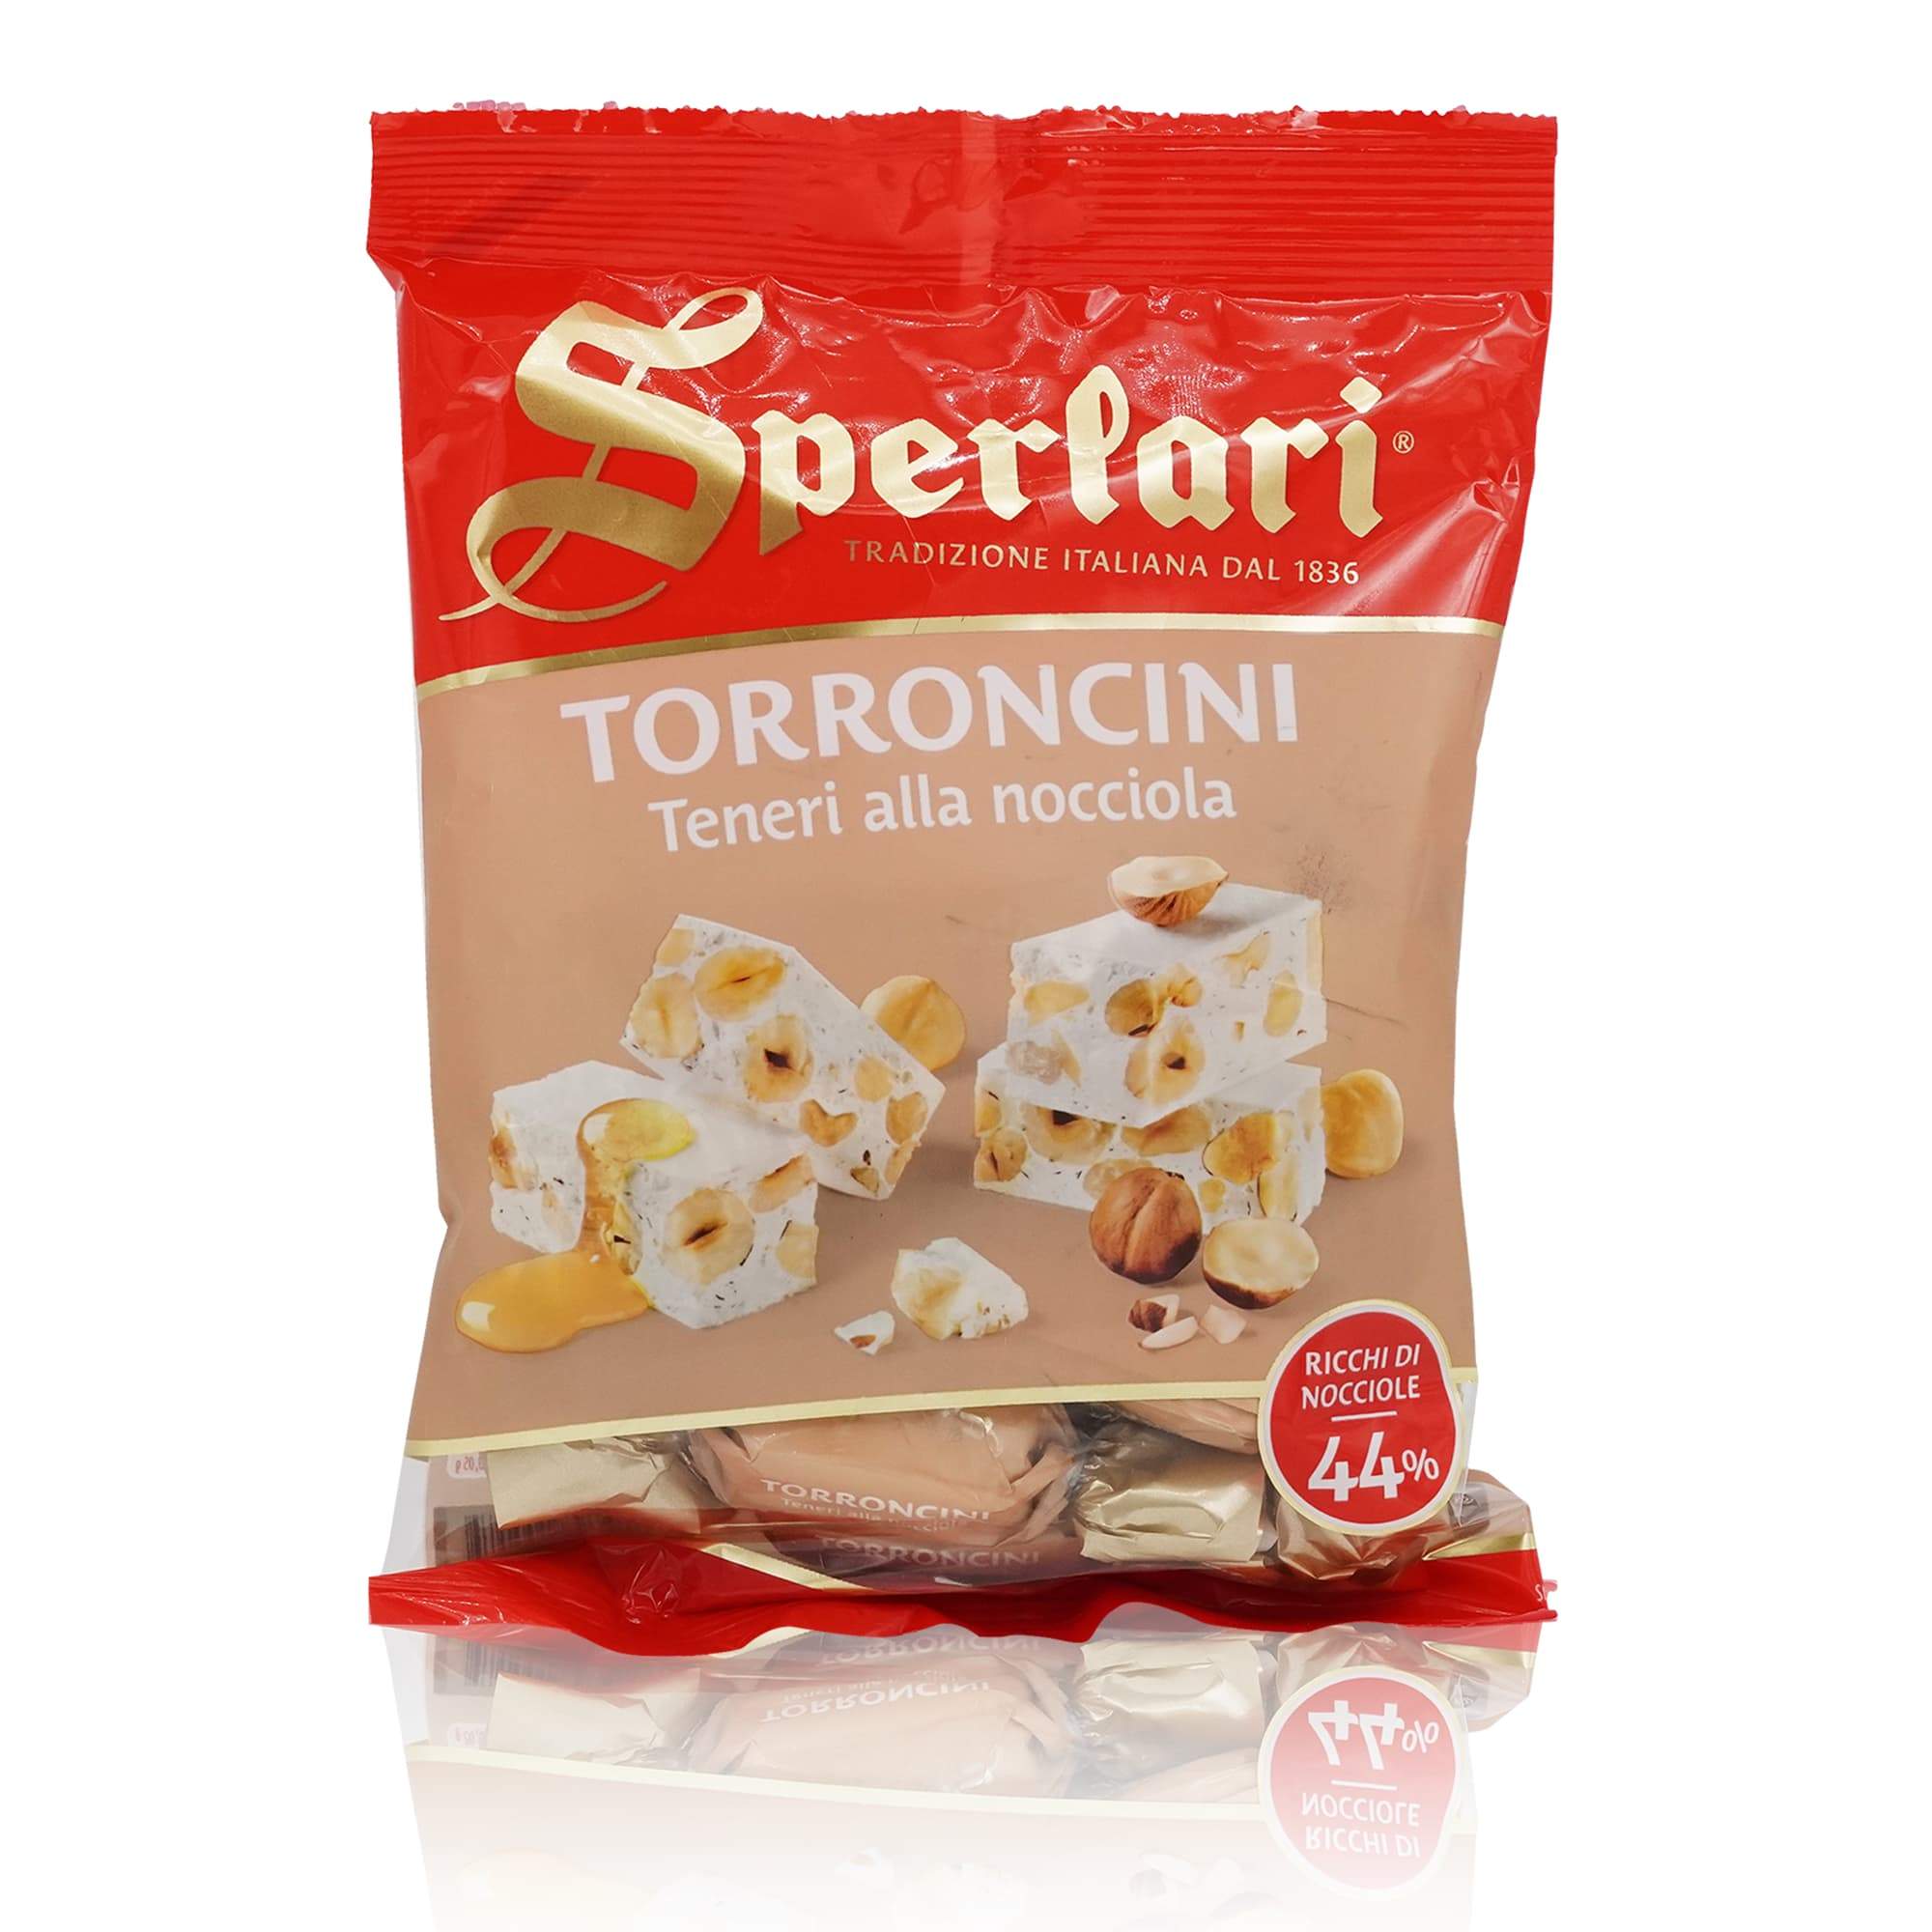 SPERLARI Torroncini teneri alla nocciola – Nougatpralinen Torroncini - 0,117kg - italienisch-einkaufen.de